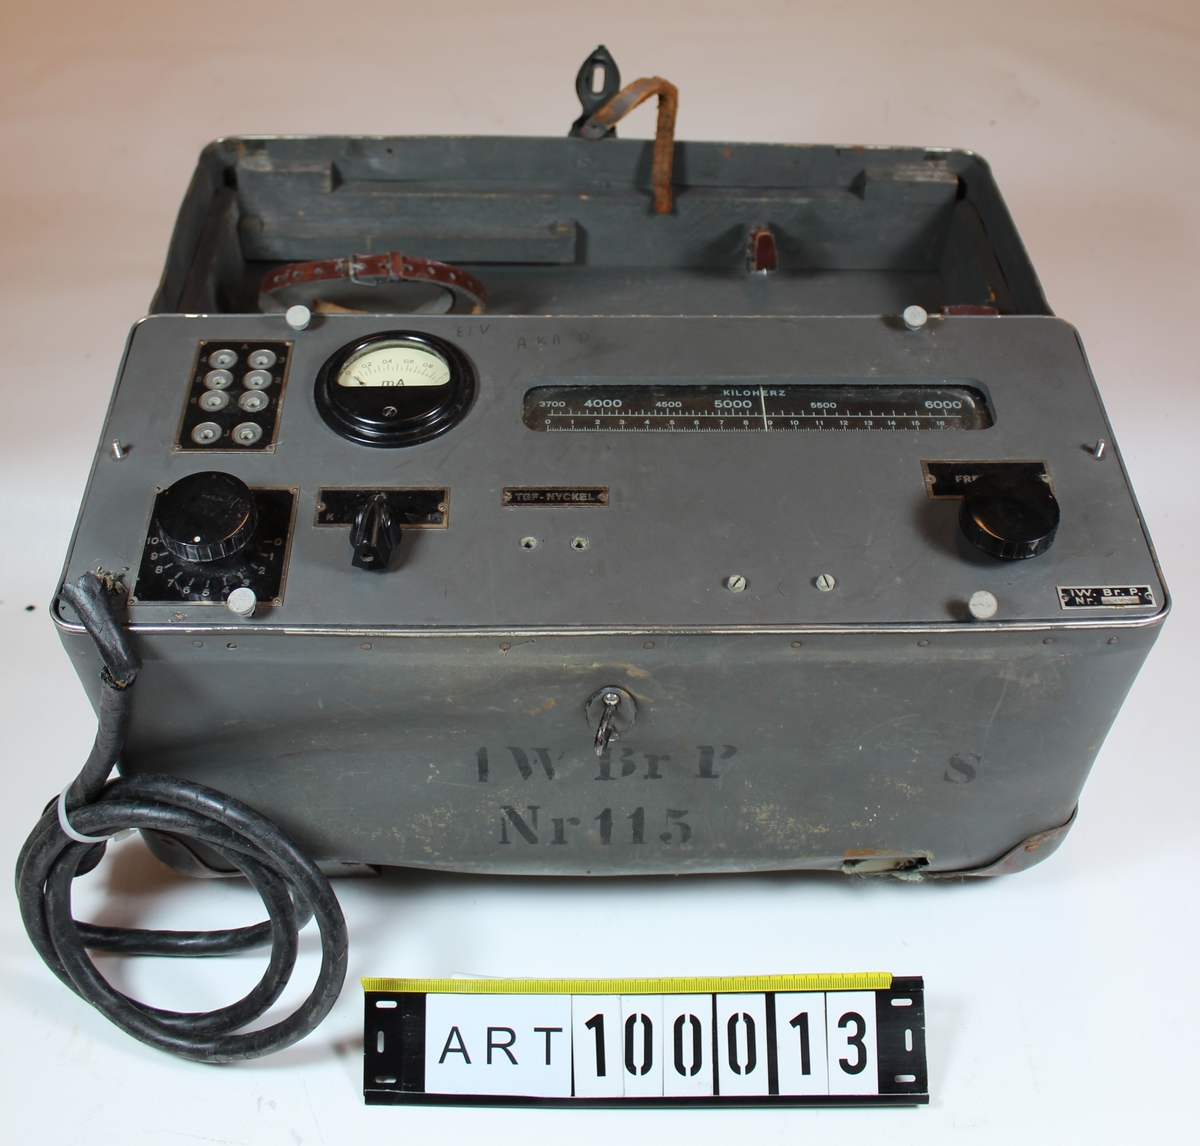 1.	watts bärbar provisorisk radiostation (1 W Br P m/40)

Endast sändarenhet finns på Artillerimuseet.

Tekniska data:
Stationen transporterades på mes av arméns modell och bestod av tre bördor; sändarlåda, mottagarlåda och batterilåda.

Stationens sändare var utförd för telegrafering utan ton, mottagaren för telegrafering och telefonering.

Sändarens frekvensområde var 3700-6000 kHz. Antenneffekten ca 0,5 W.

Mottagarens frekvensområde var 510-1550 kHz, 1500-4000 kHz och 3500-10000 kHz.

Batterilådan bestod av två torrbatterier A63 för anodspänning och en ackumulator D 18 för glödström

Antennen utgjordes av 3 st likadana linor, (en antennlina och två motviktslinor) och kunde anordnas som markantenn eller kastantenn

Stationen finns beskriven i:
Instruktion för 1 watts bärbar provisorisk radiostation (1 W Br P m/40)
Februari 1942

KATD beställde 1941-05-21 av Gylling & Co 200 st radiostationer typ Centrum H1 till ett pris av 129.000:-


Underlag till ”beskrivning” är i huvudsak hämtat ur Försvarets Historiska Telesamlingar
Armén, sammanställning över arméns lätta radiostationer under 1900-talet av
Sven Bertilsson och Thomas Hörstedt (Grön radio).
